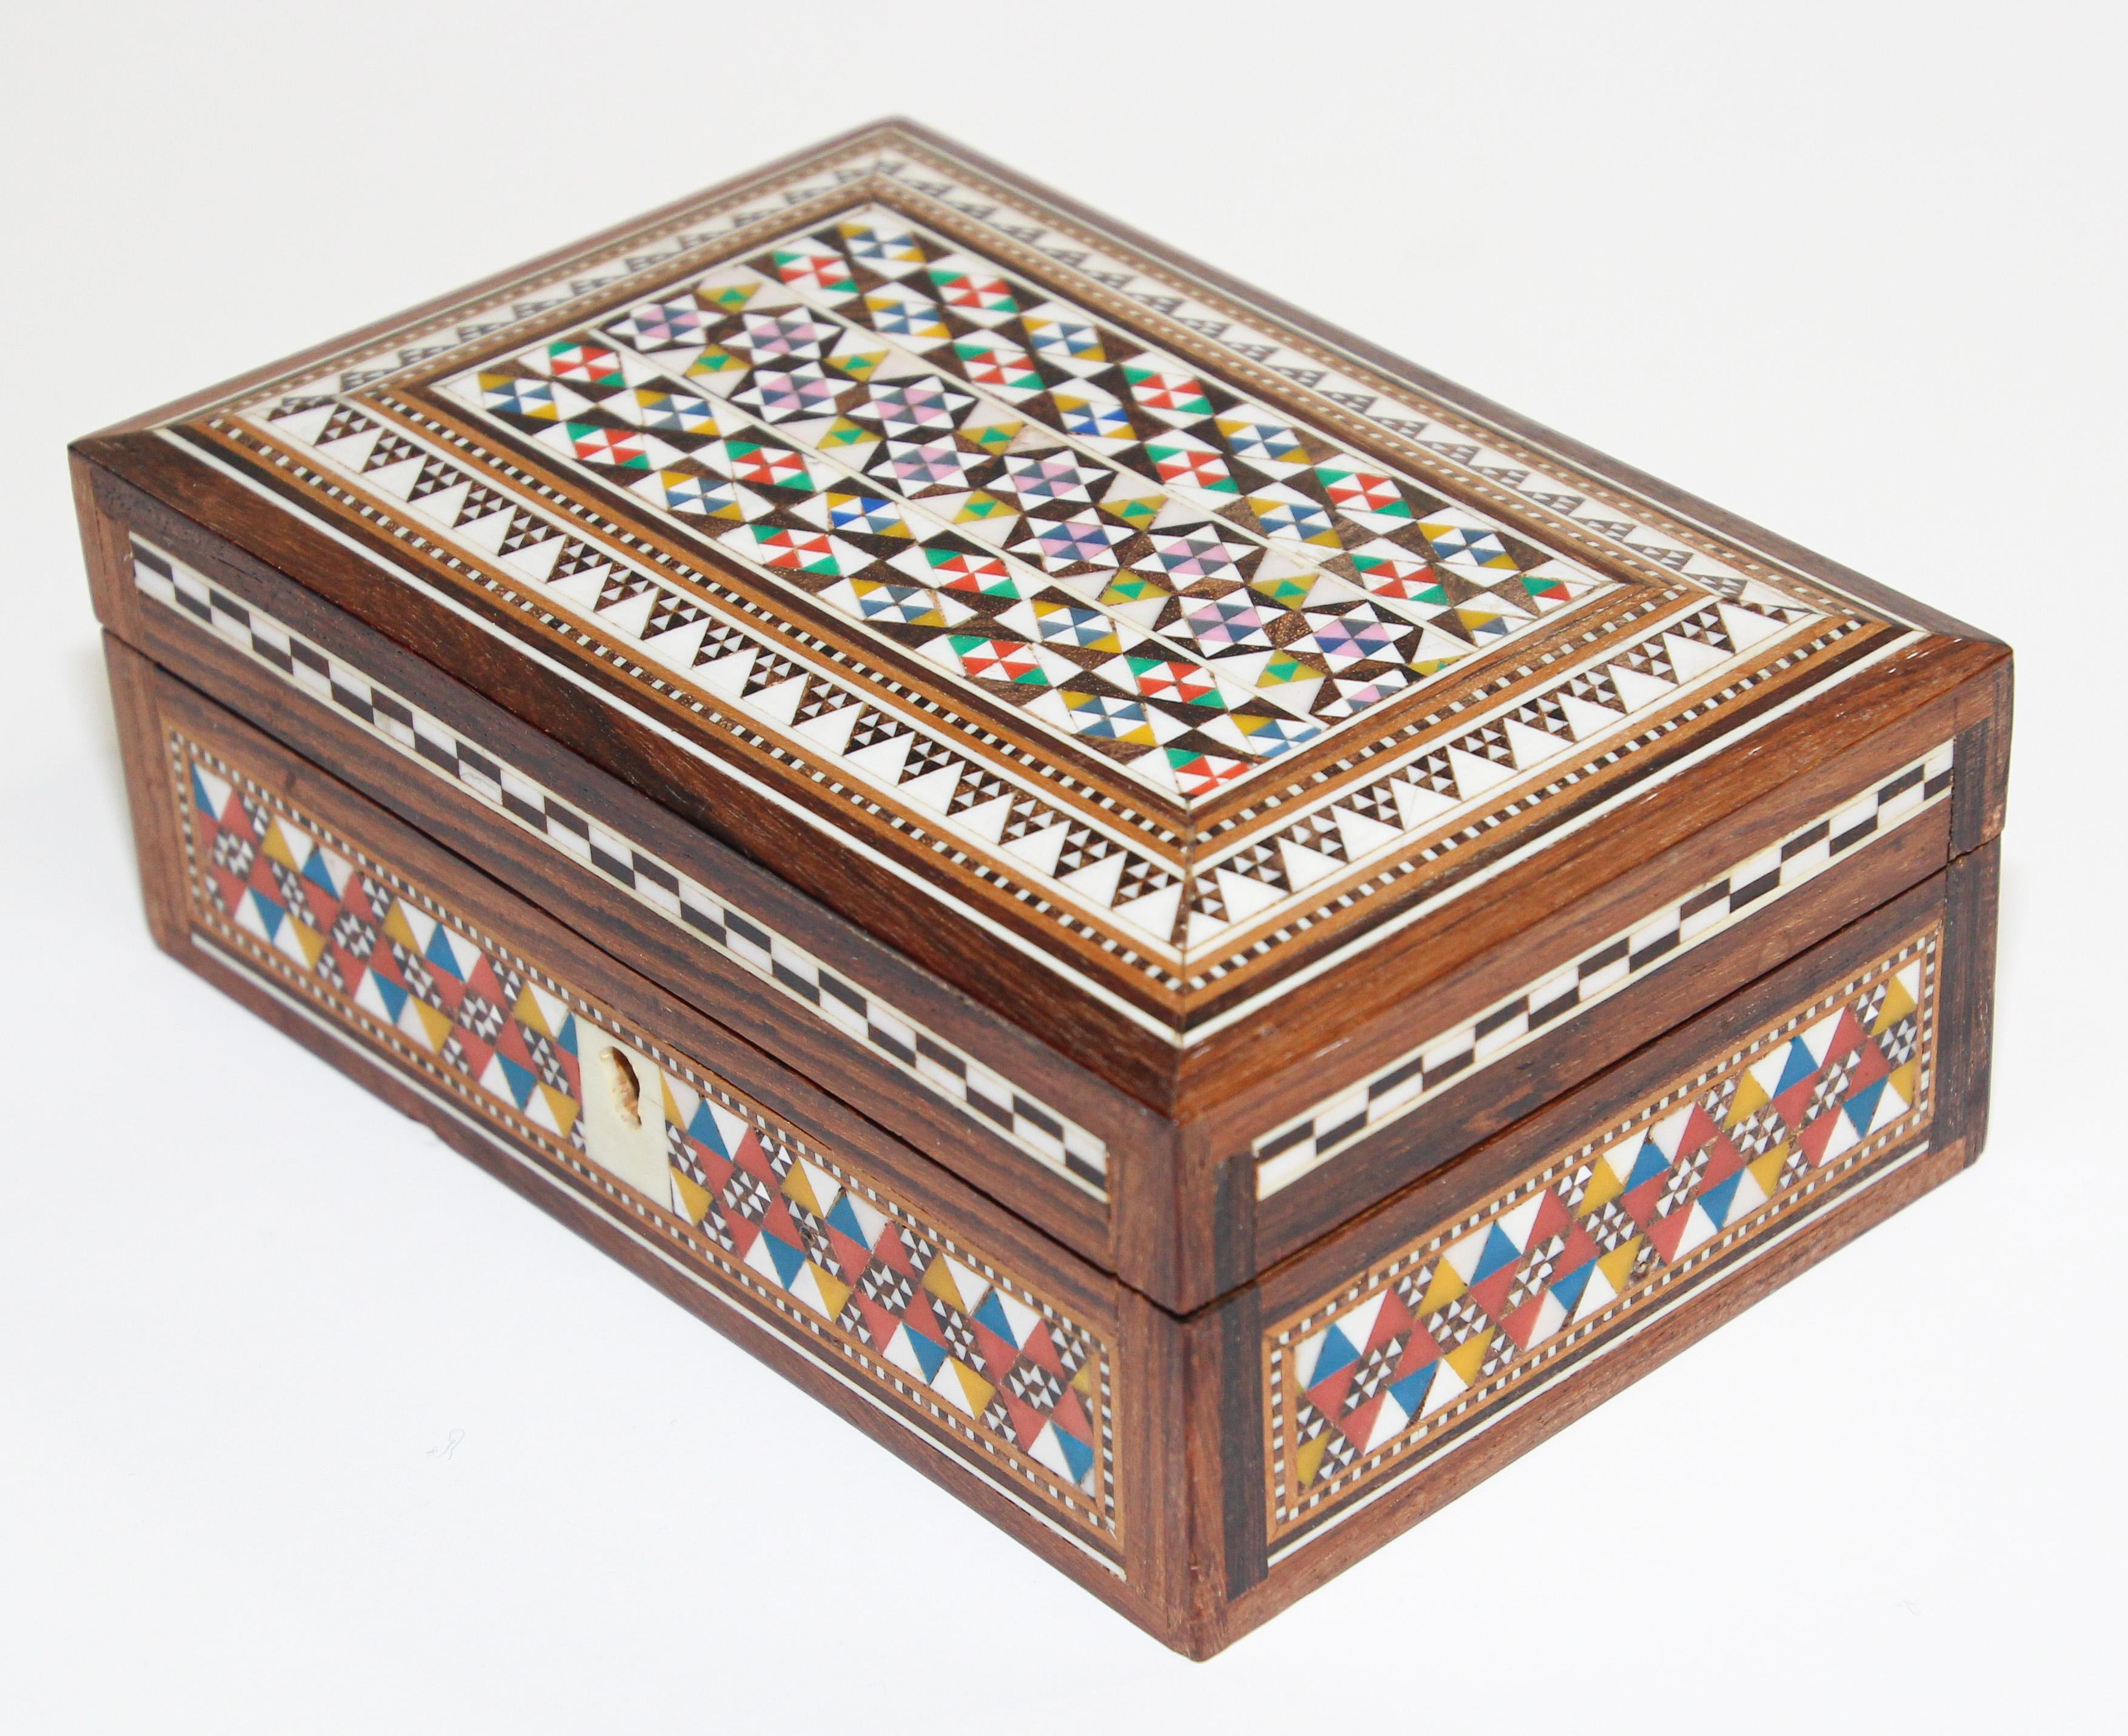 Exquise boîte en bois incrustée de mosaïques libanaises et égyptiennes fabriquée à la main au Moyen-Orient.
Petite boîte vintage en noyer de style syrien, décorée de motifs mauresques minutieusement incrustés de mosaïques de coquillages et de